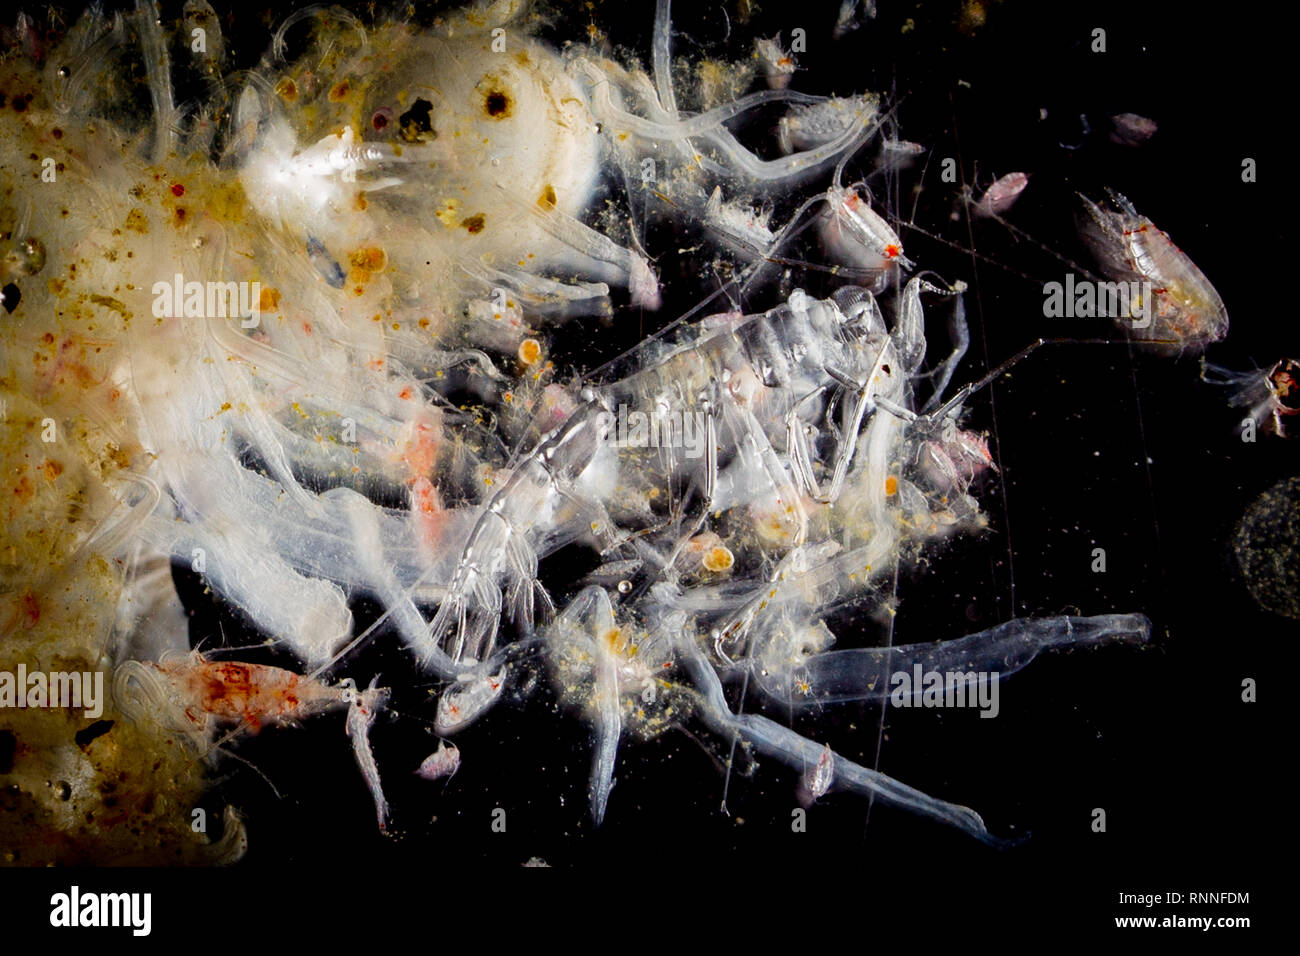 Plankton sample von meeresbiologen an Bord die ozeanographische Forschung Kreuzfahrt in den Südatlantik gesammelt. Stockfoto